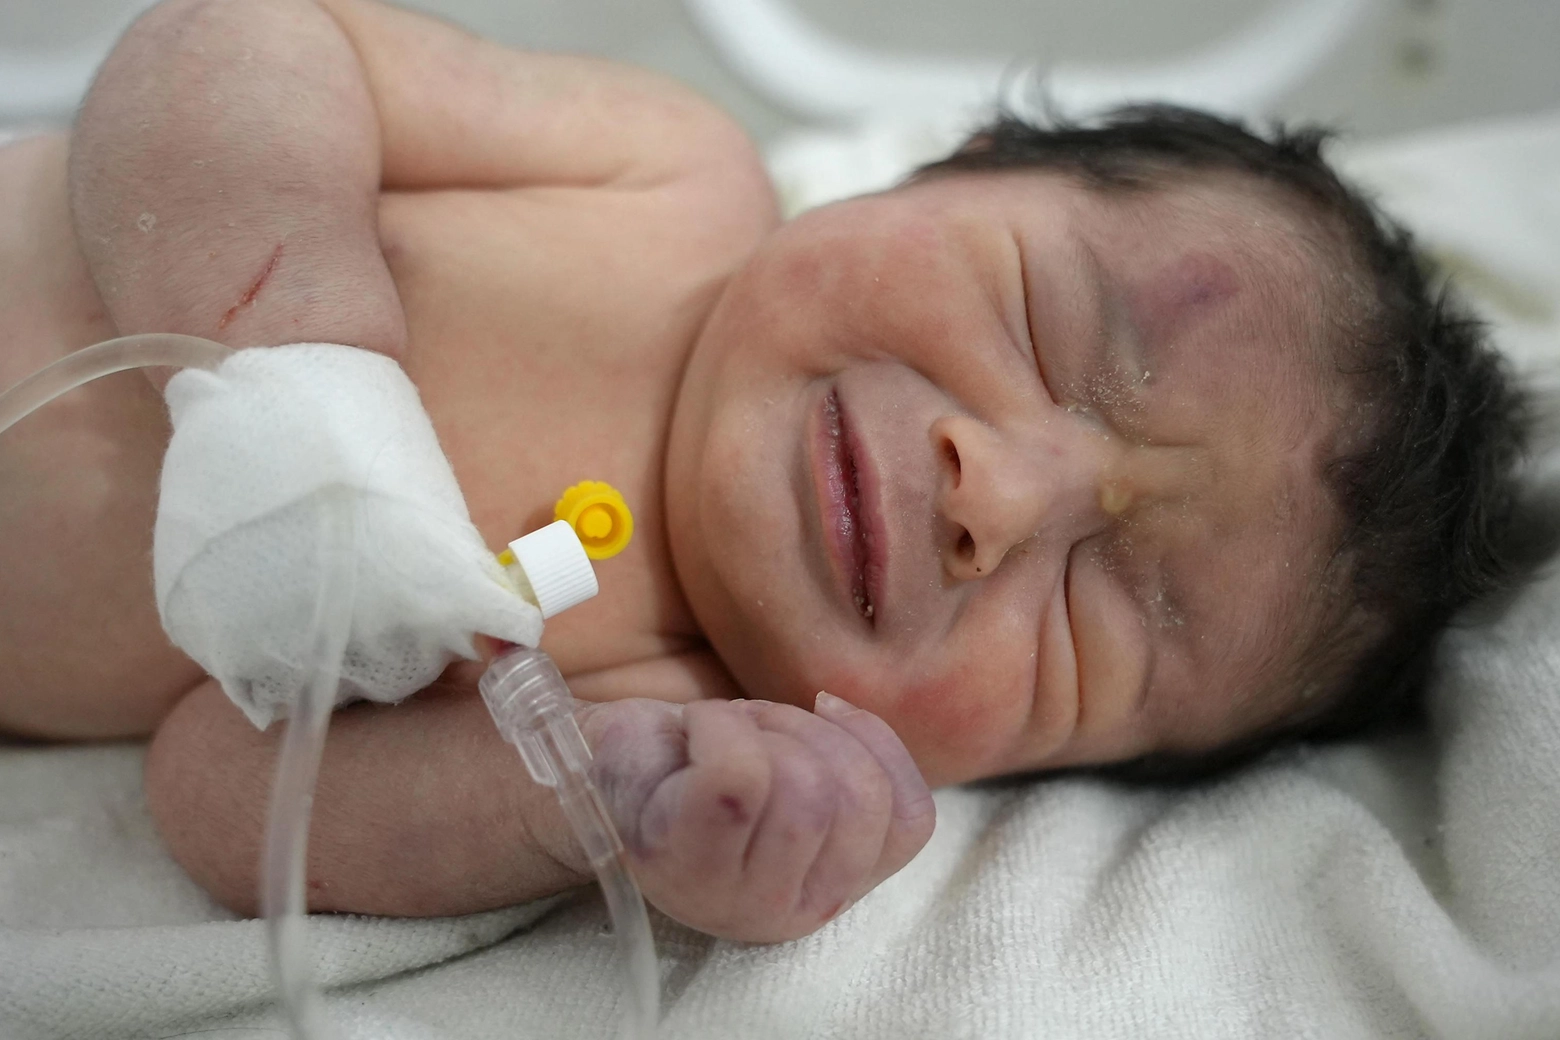 Terremoto Siria, la neonata trovata con il cordone ombelicale ancora attaccato alla madre